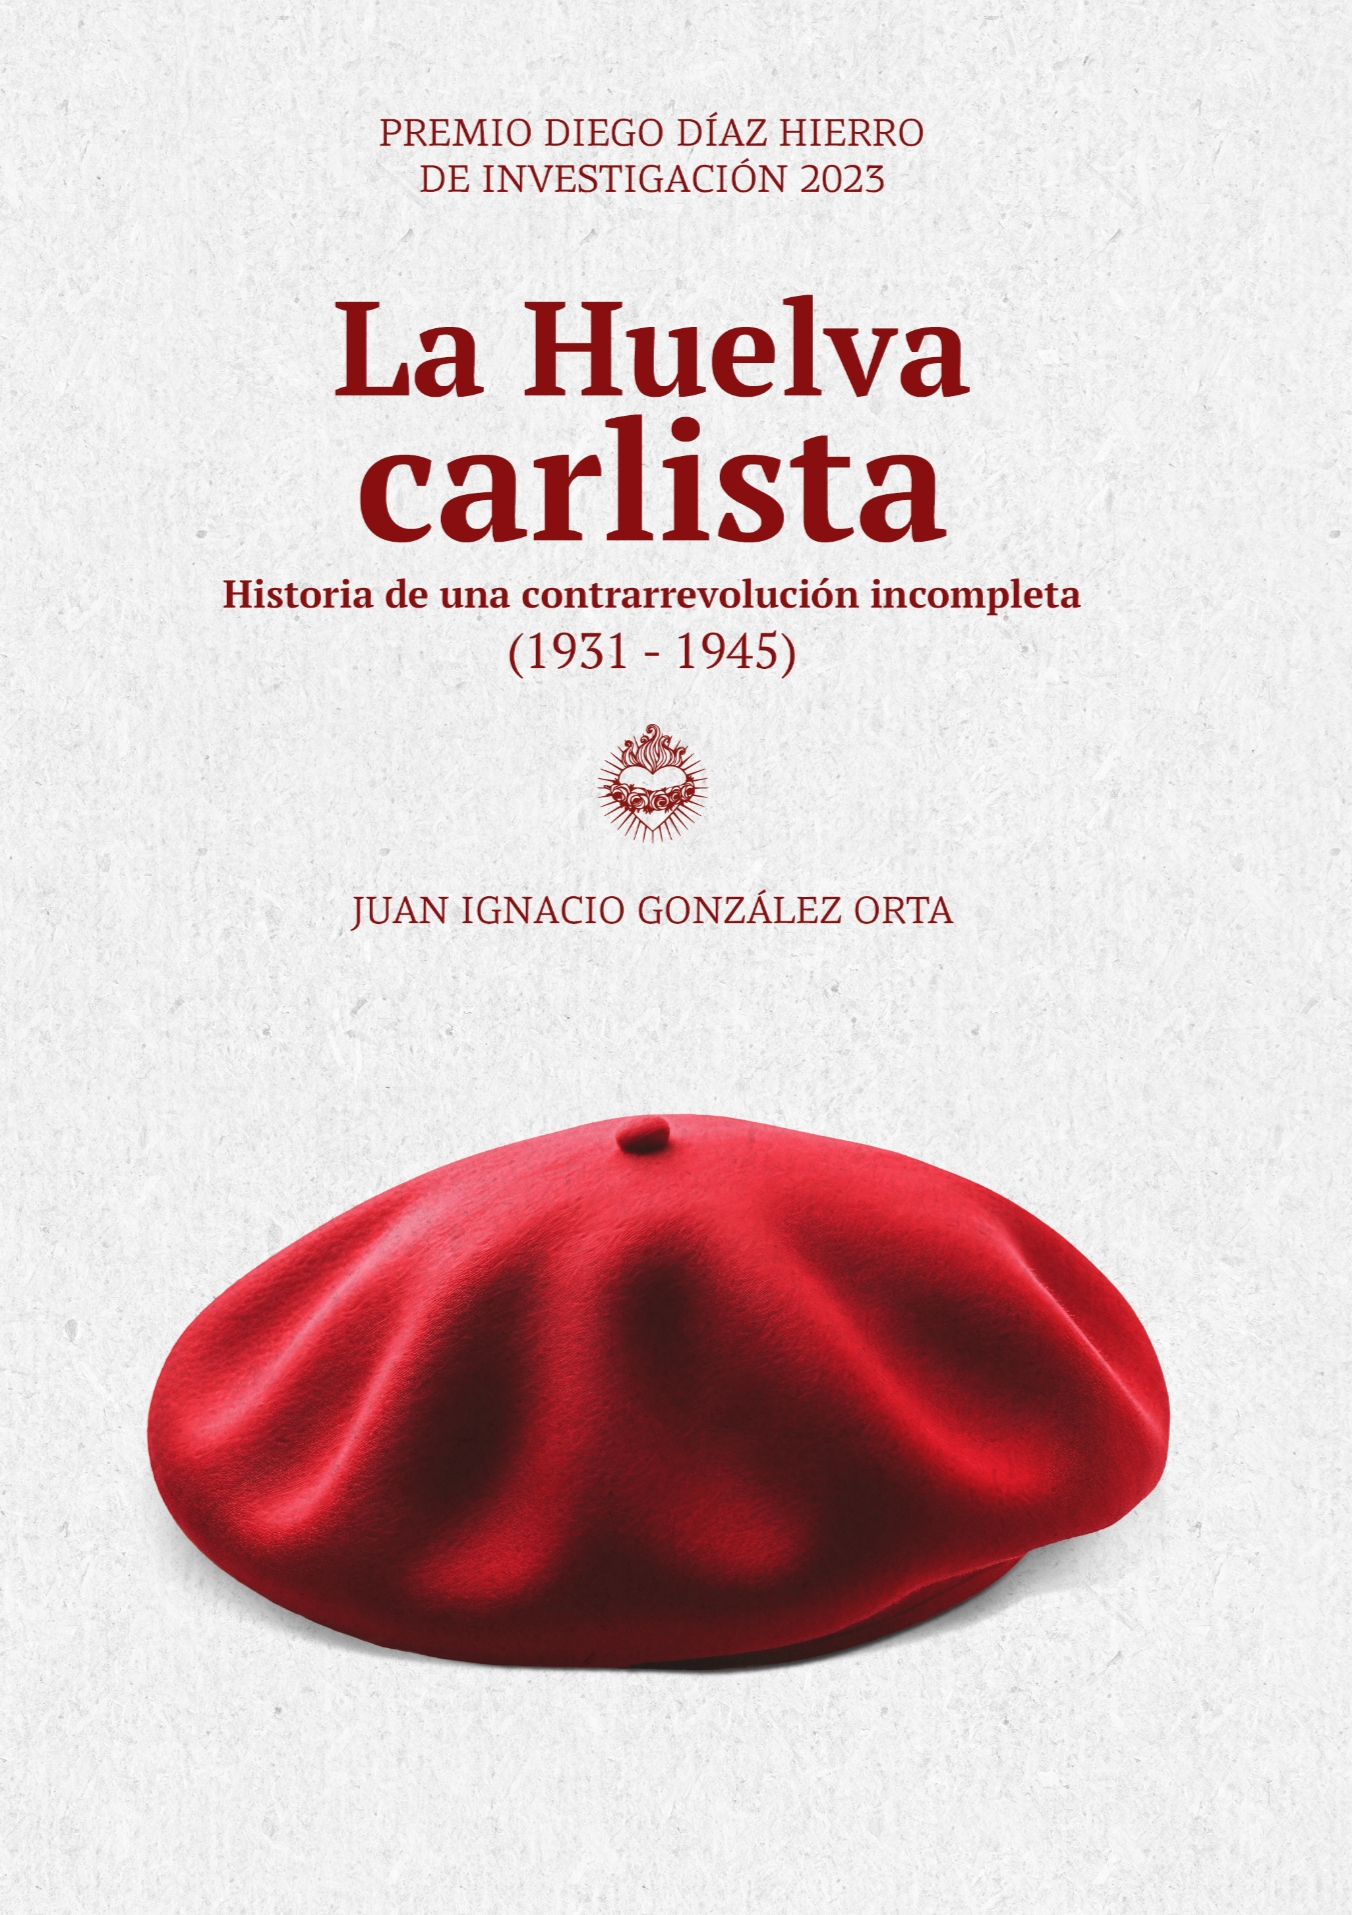 Imagen de portada del libro La Huelva carlista: Historia de una contrarrevolución incompleta (1931-1945)